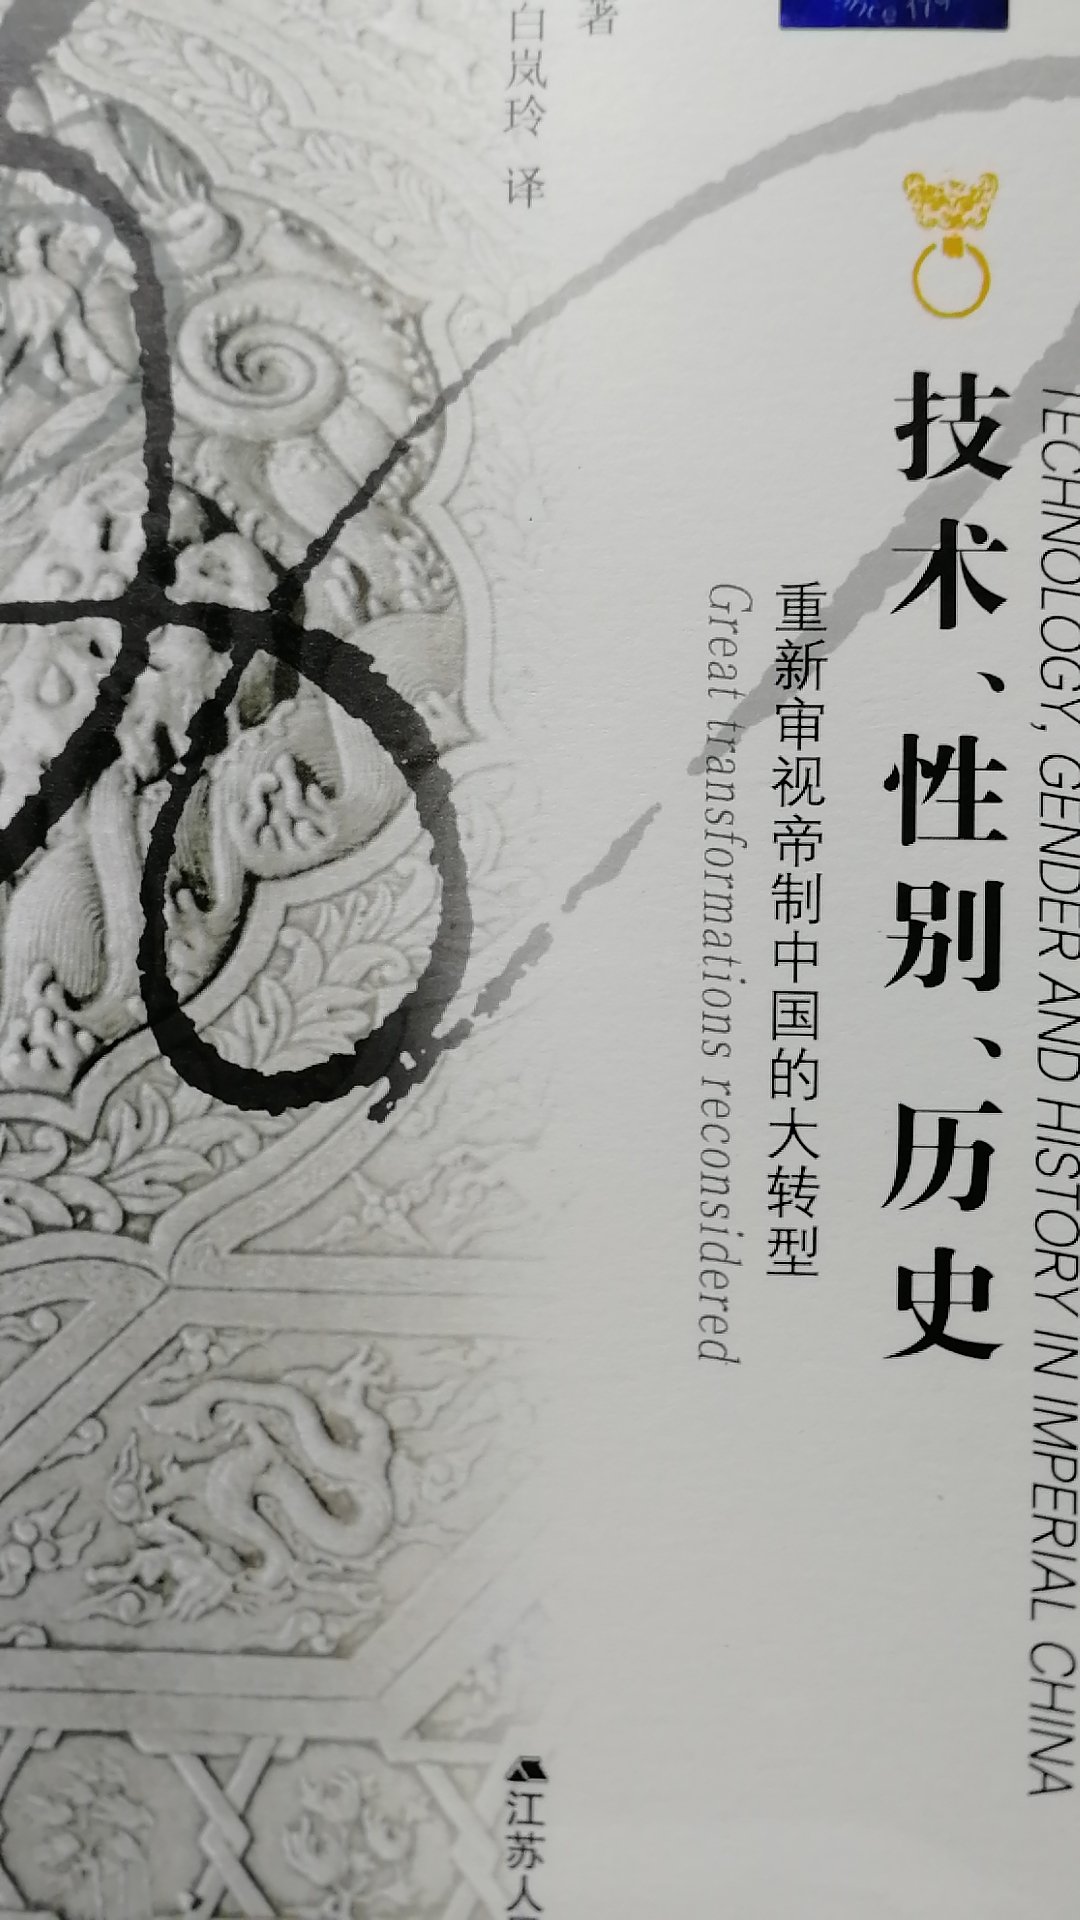 白馥兰的《技术、性别与历史》一书重审中国大转型。